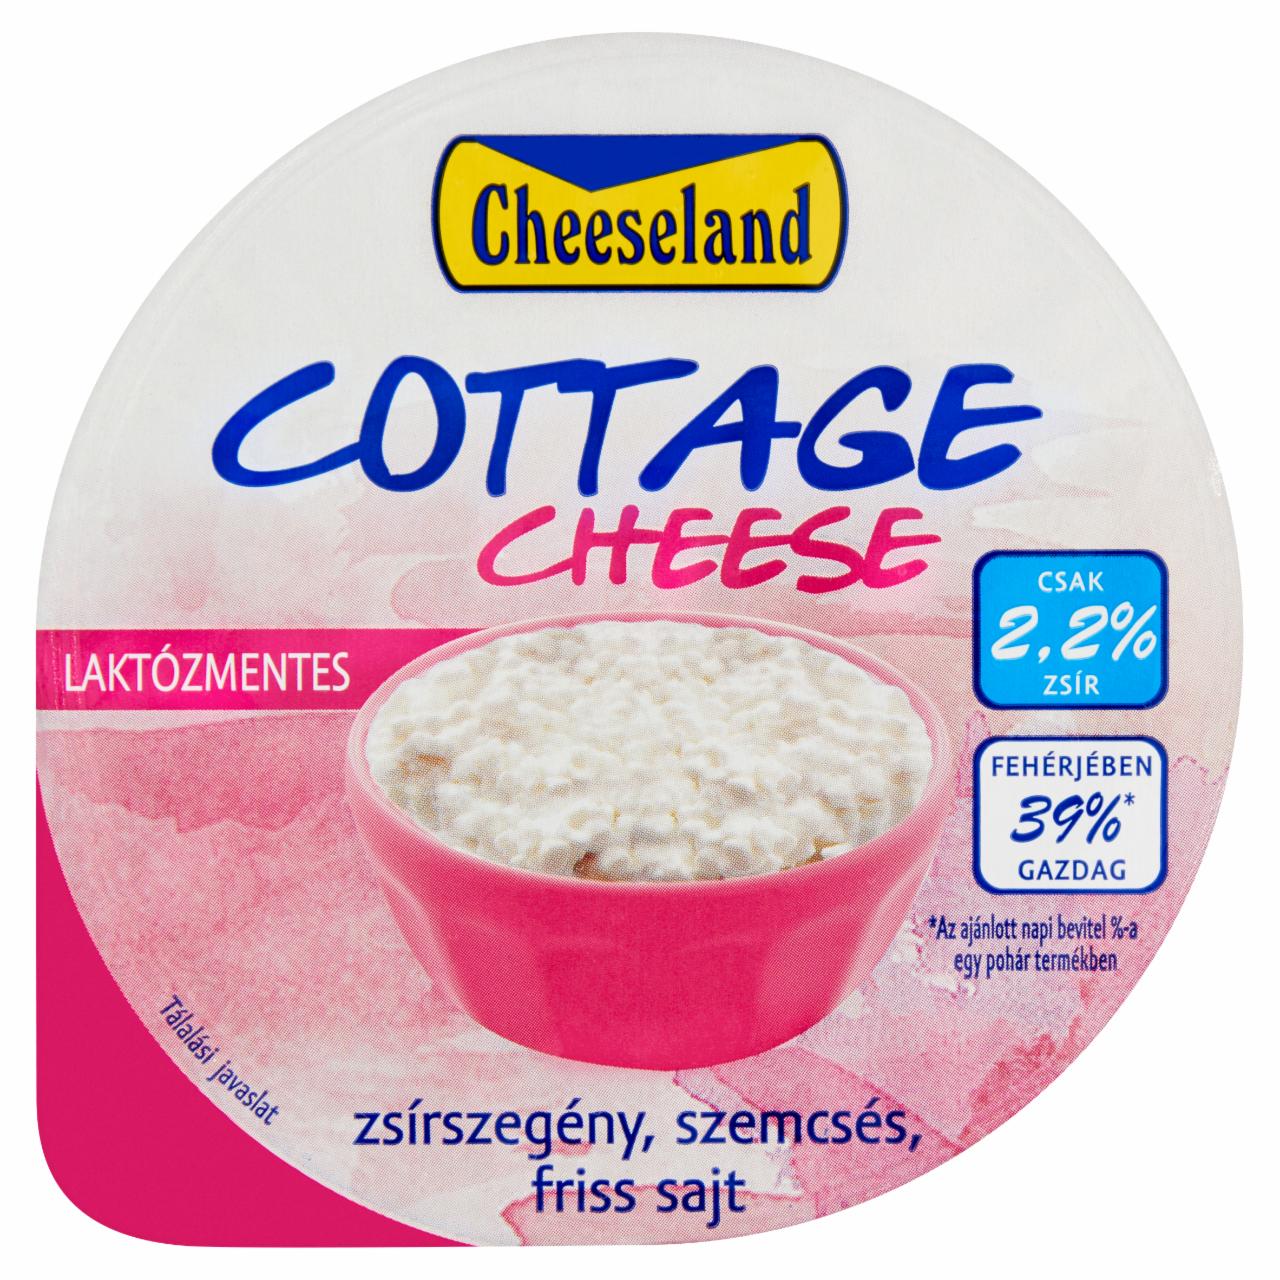 Képek - Cheeseland laktózmentes, zsírszegény, szemcsés friss sajt 150 g